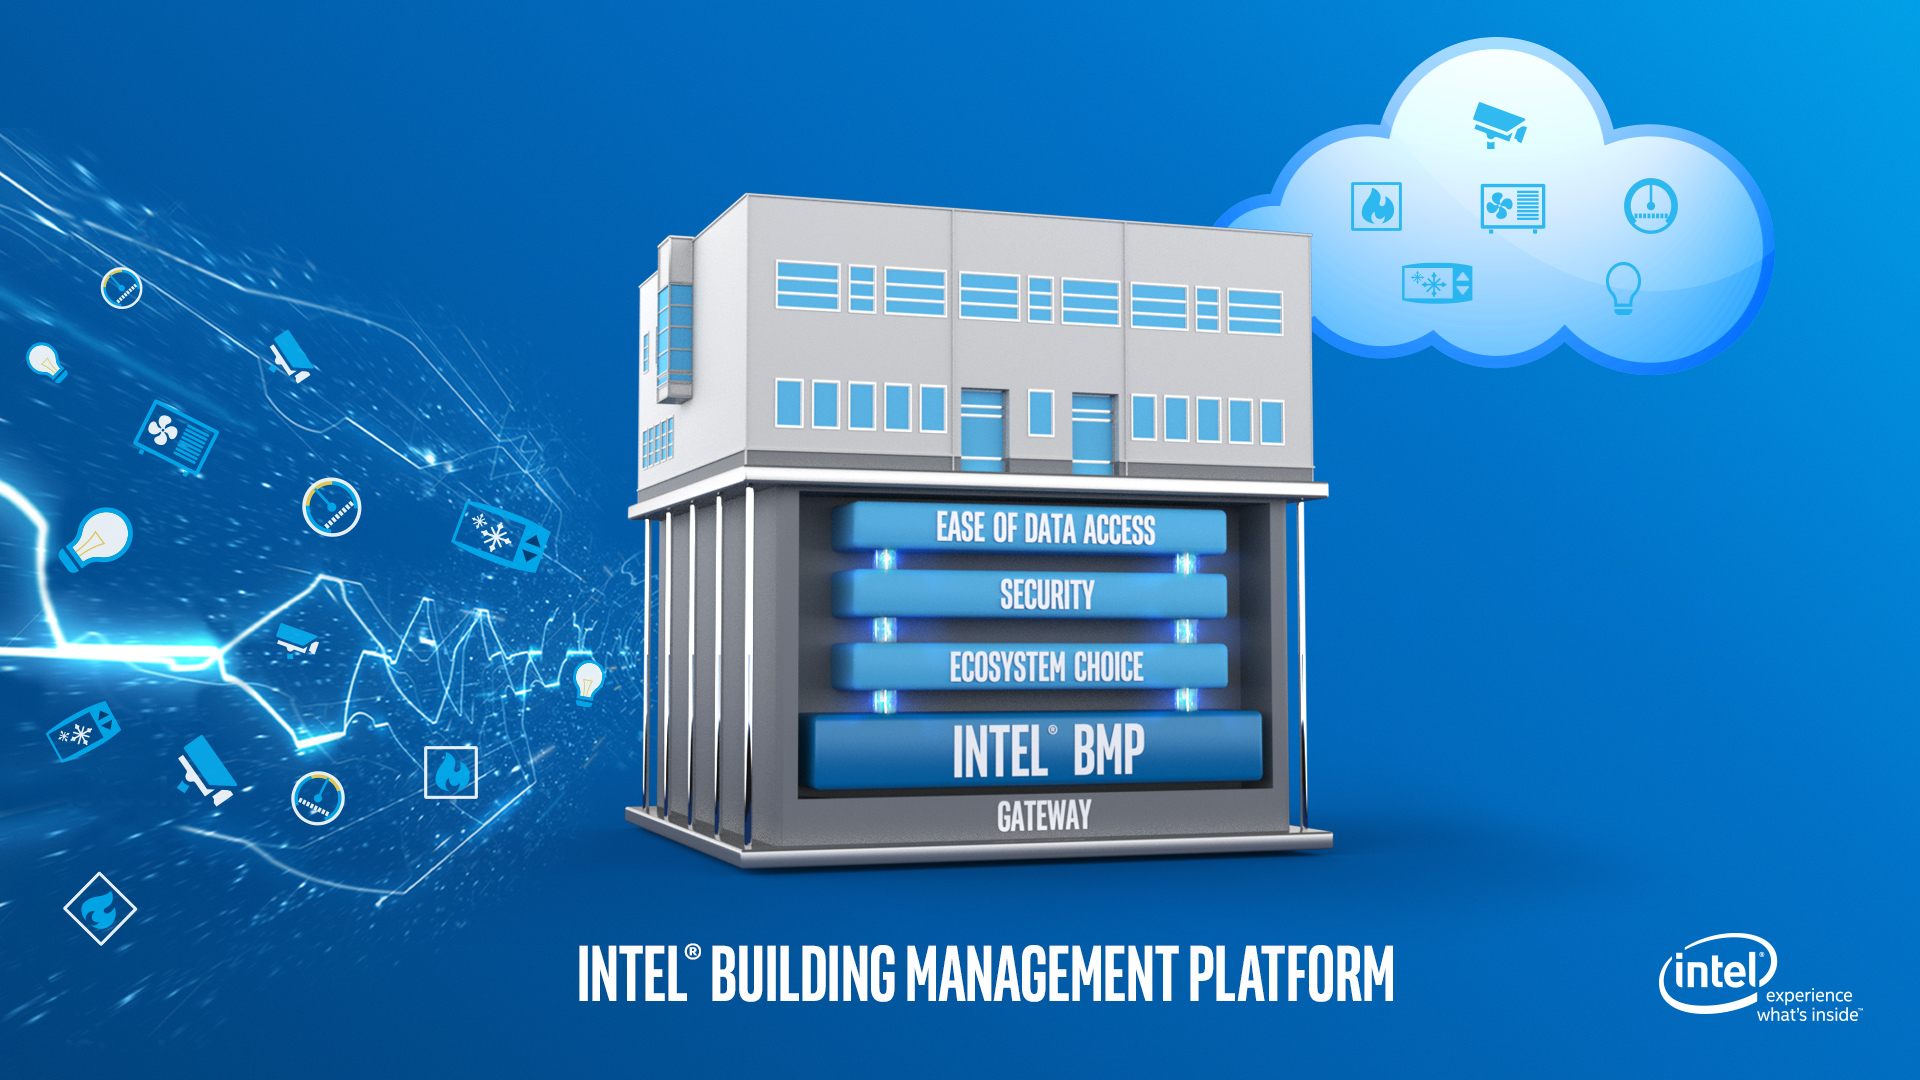 Así es el camino de Intel para lograr edificios inteligentes y conectados